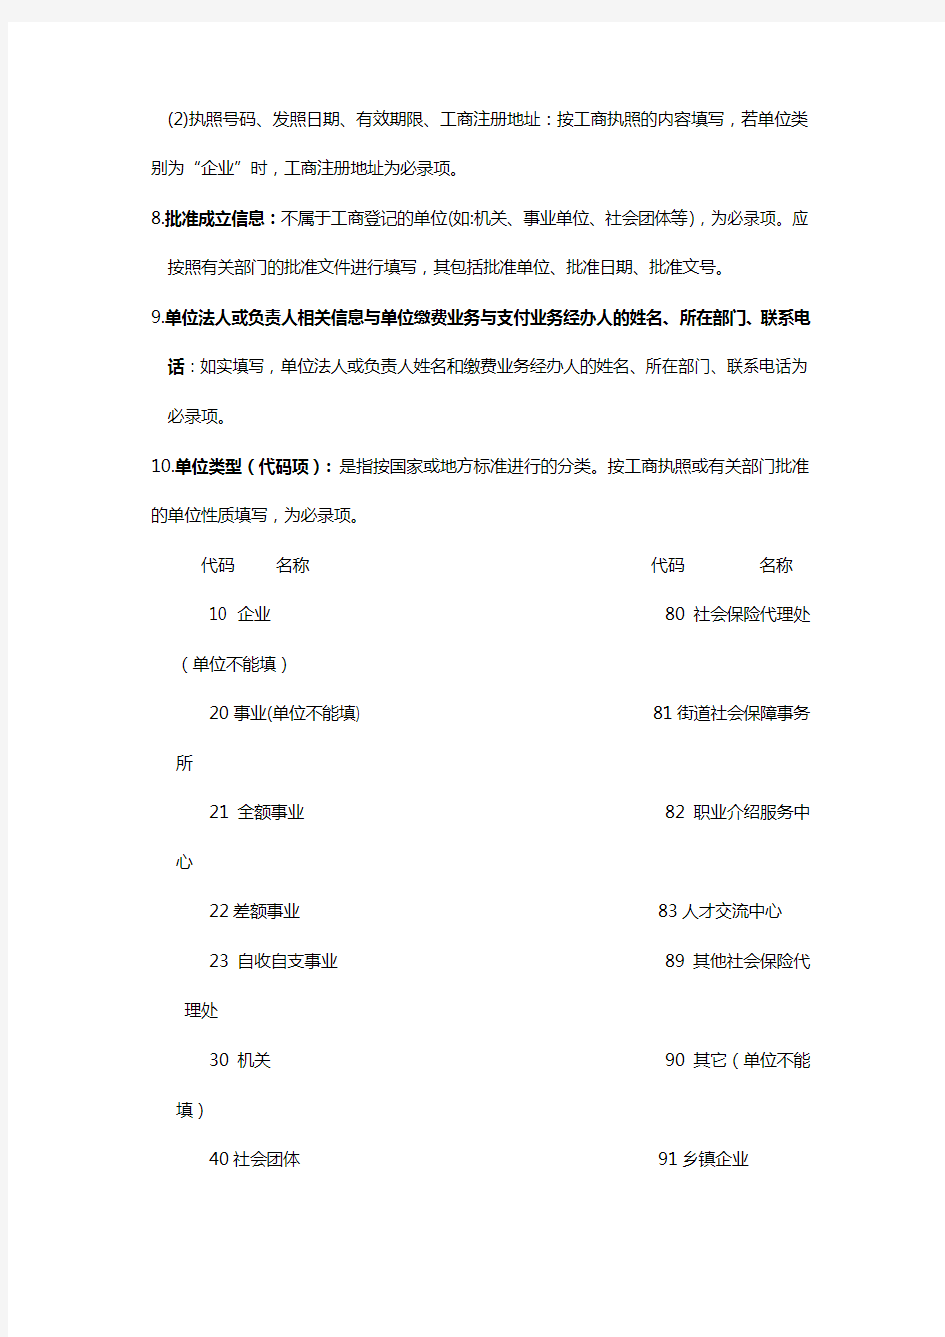 《北京市社会保险单位信息登记表》填表说明及所需材料.doc